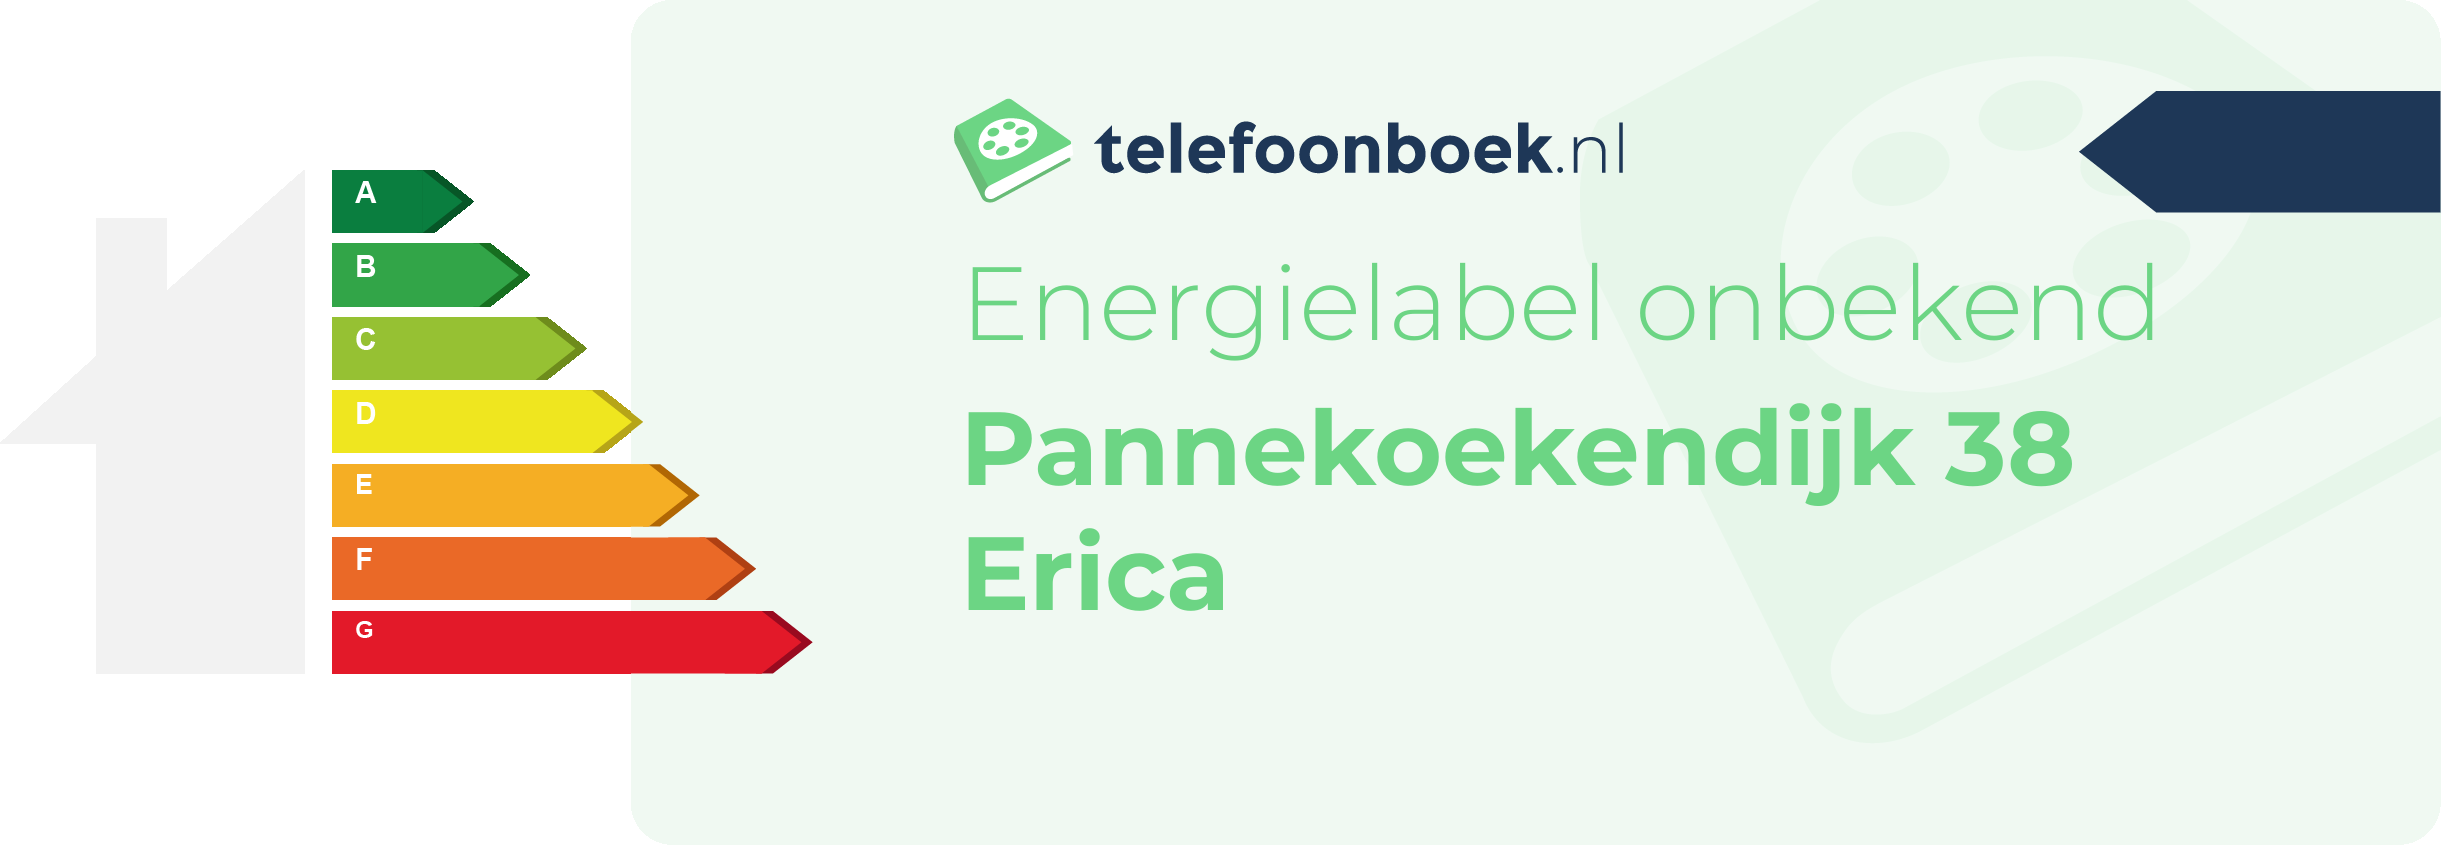 Energielabel Pannekoekendijk 38 Erica